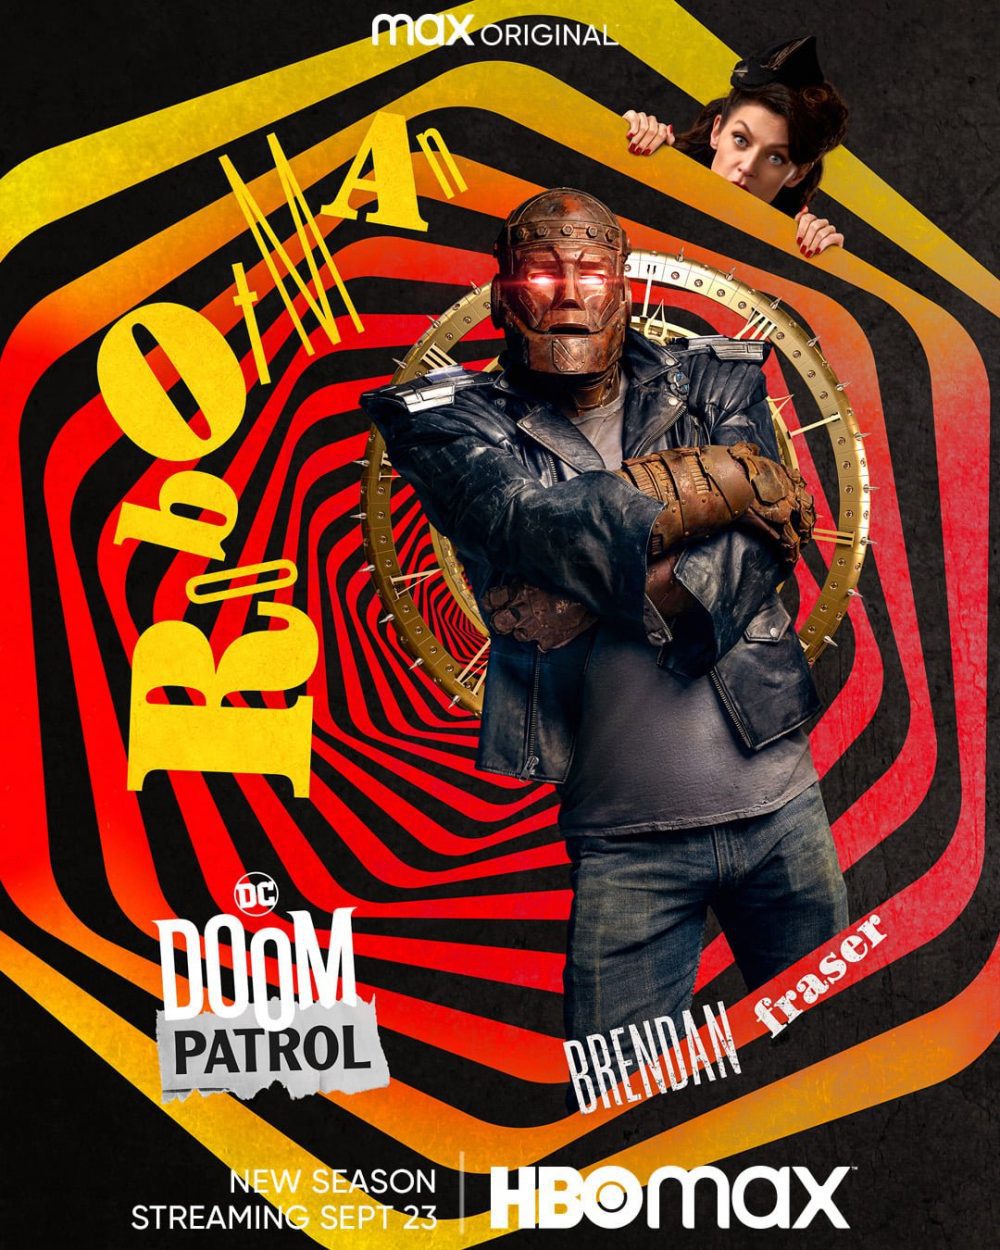 Doom Patrol: i characters poster della terza stagione in arrivo su HBO Max